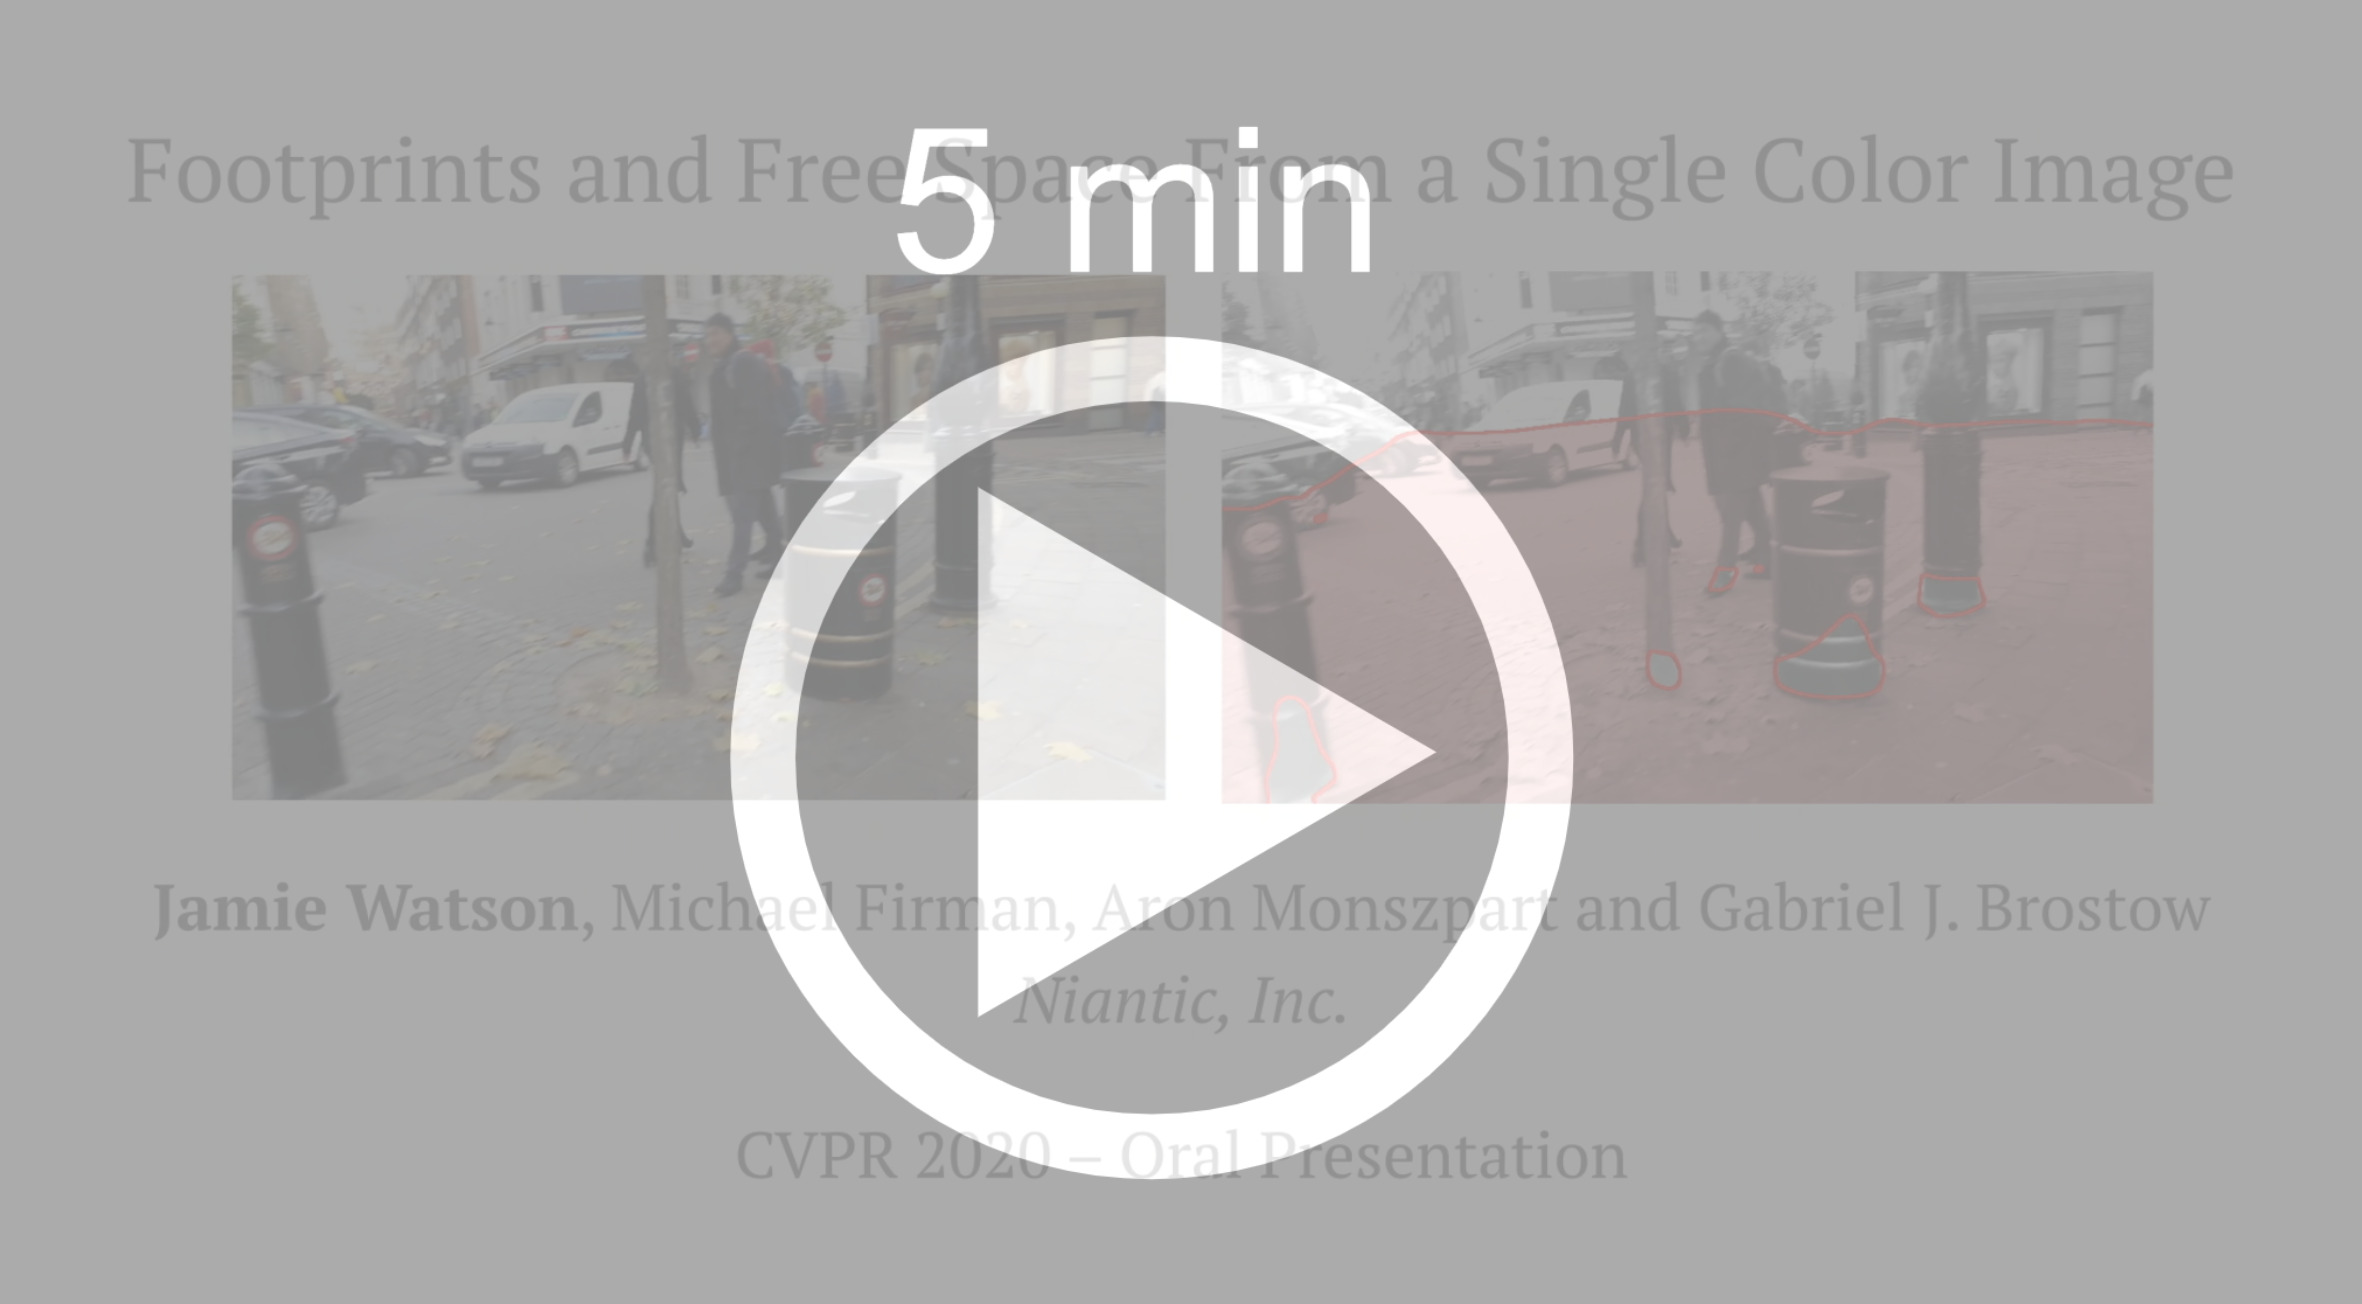 5 minute CVPR presentation video link